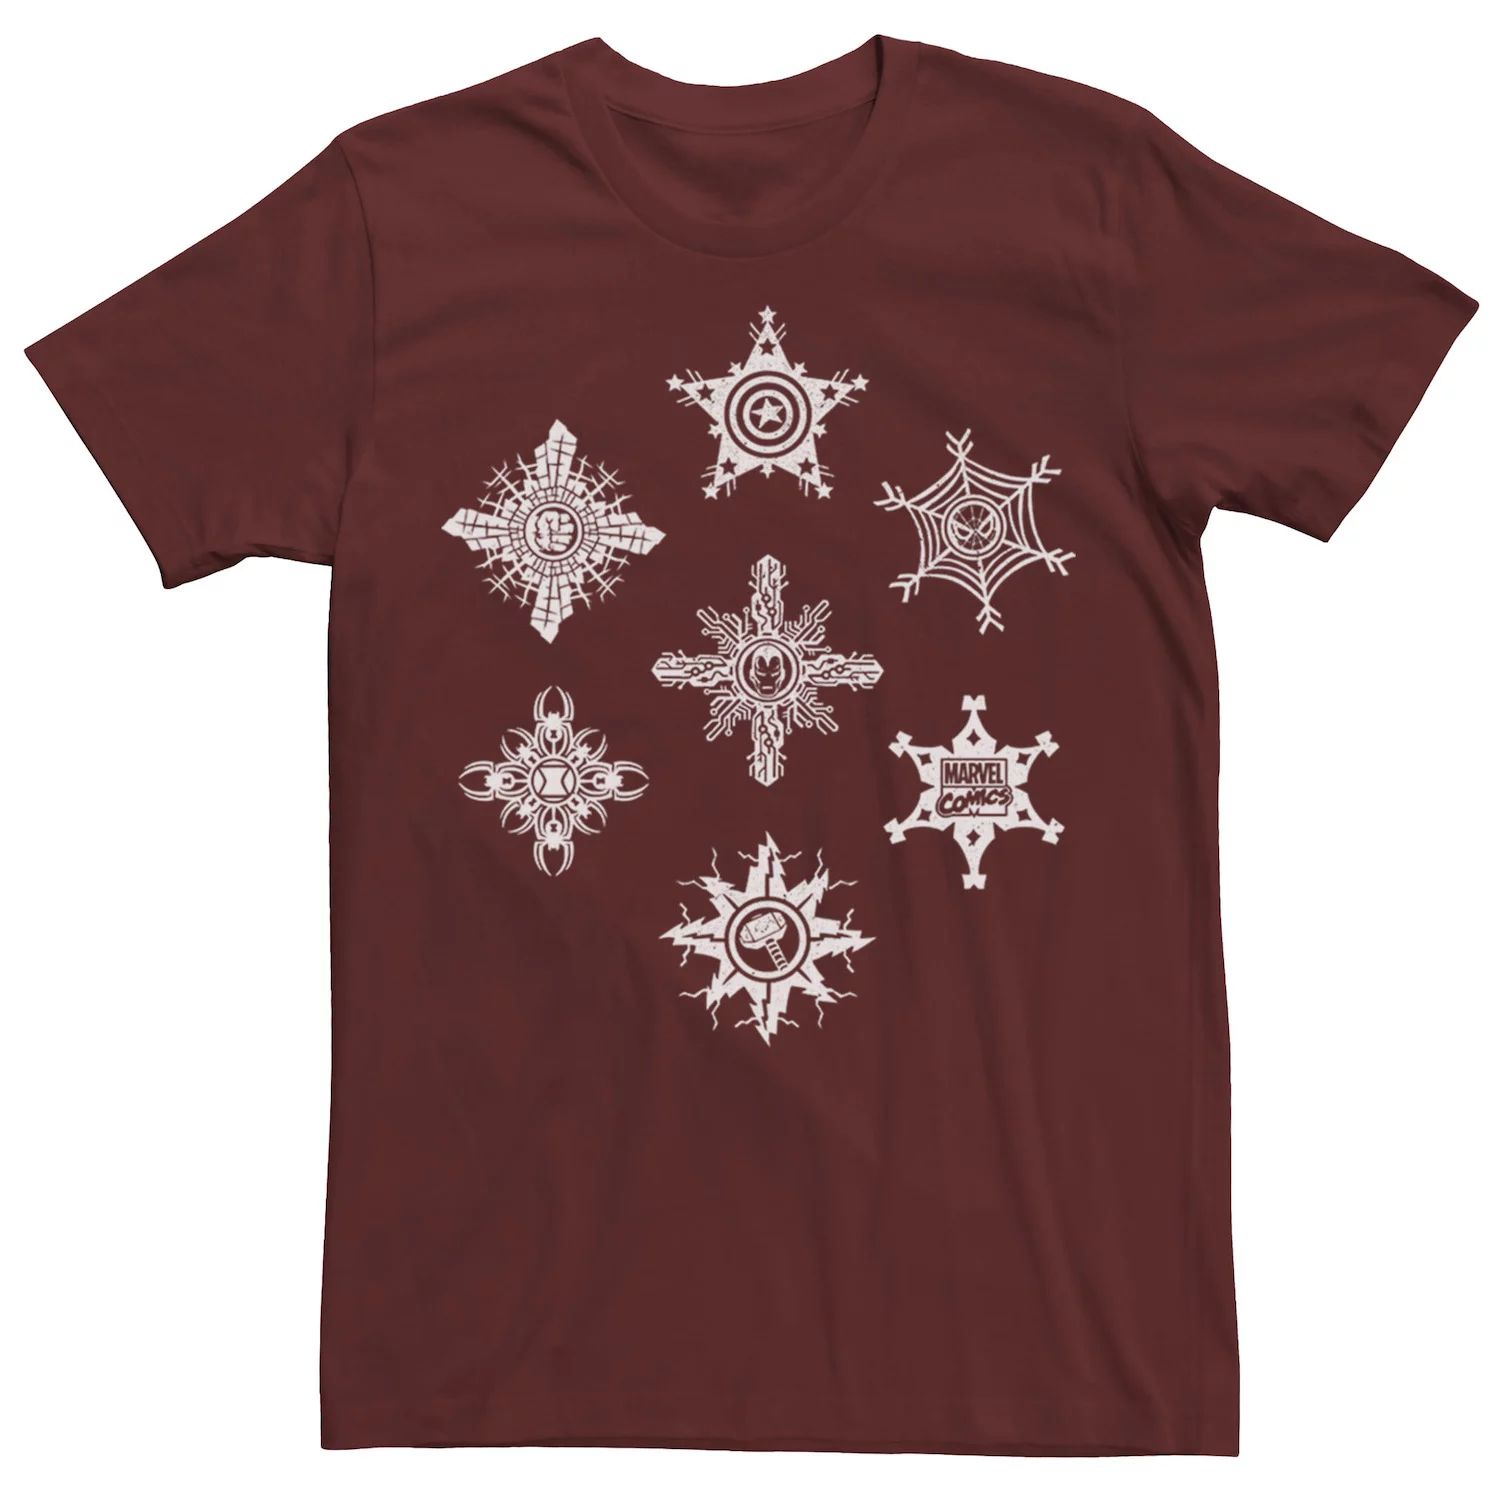 Мужская футболка с рождественским рисунком и символами снежинок Marvel